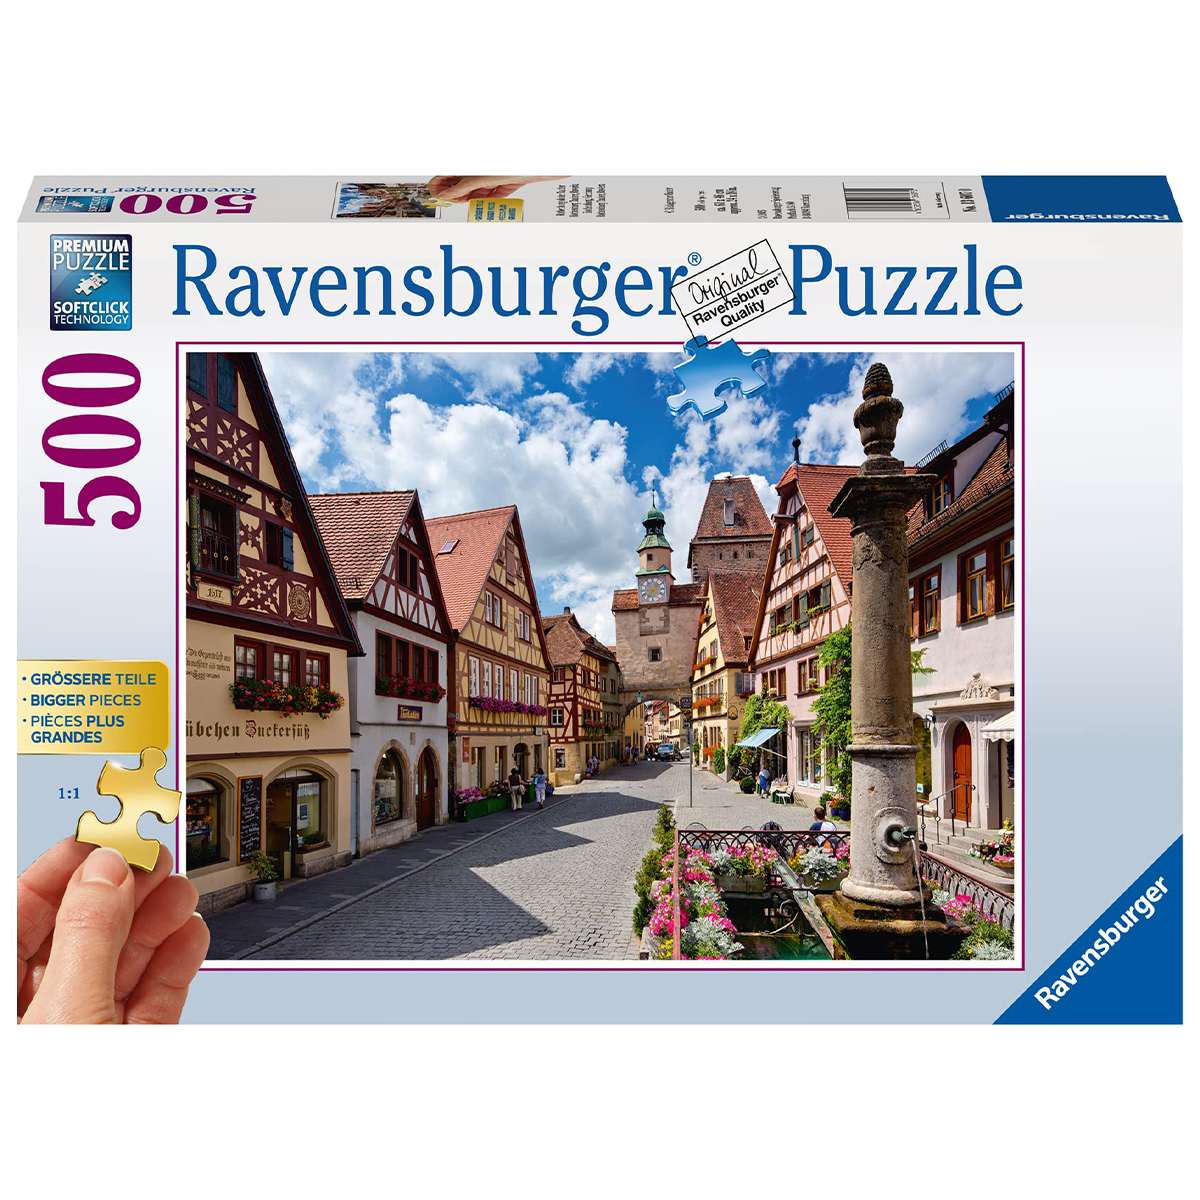 Puzzle Ravensburger Rothenburg de 500 piezas XXL